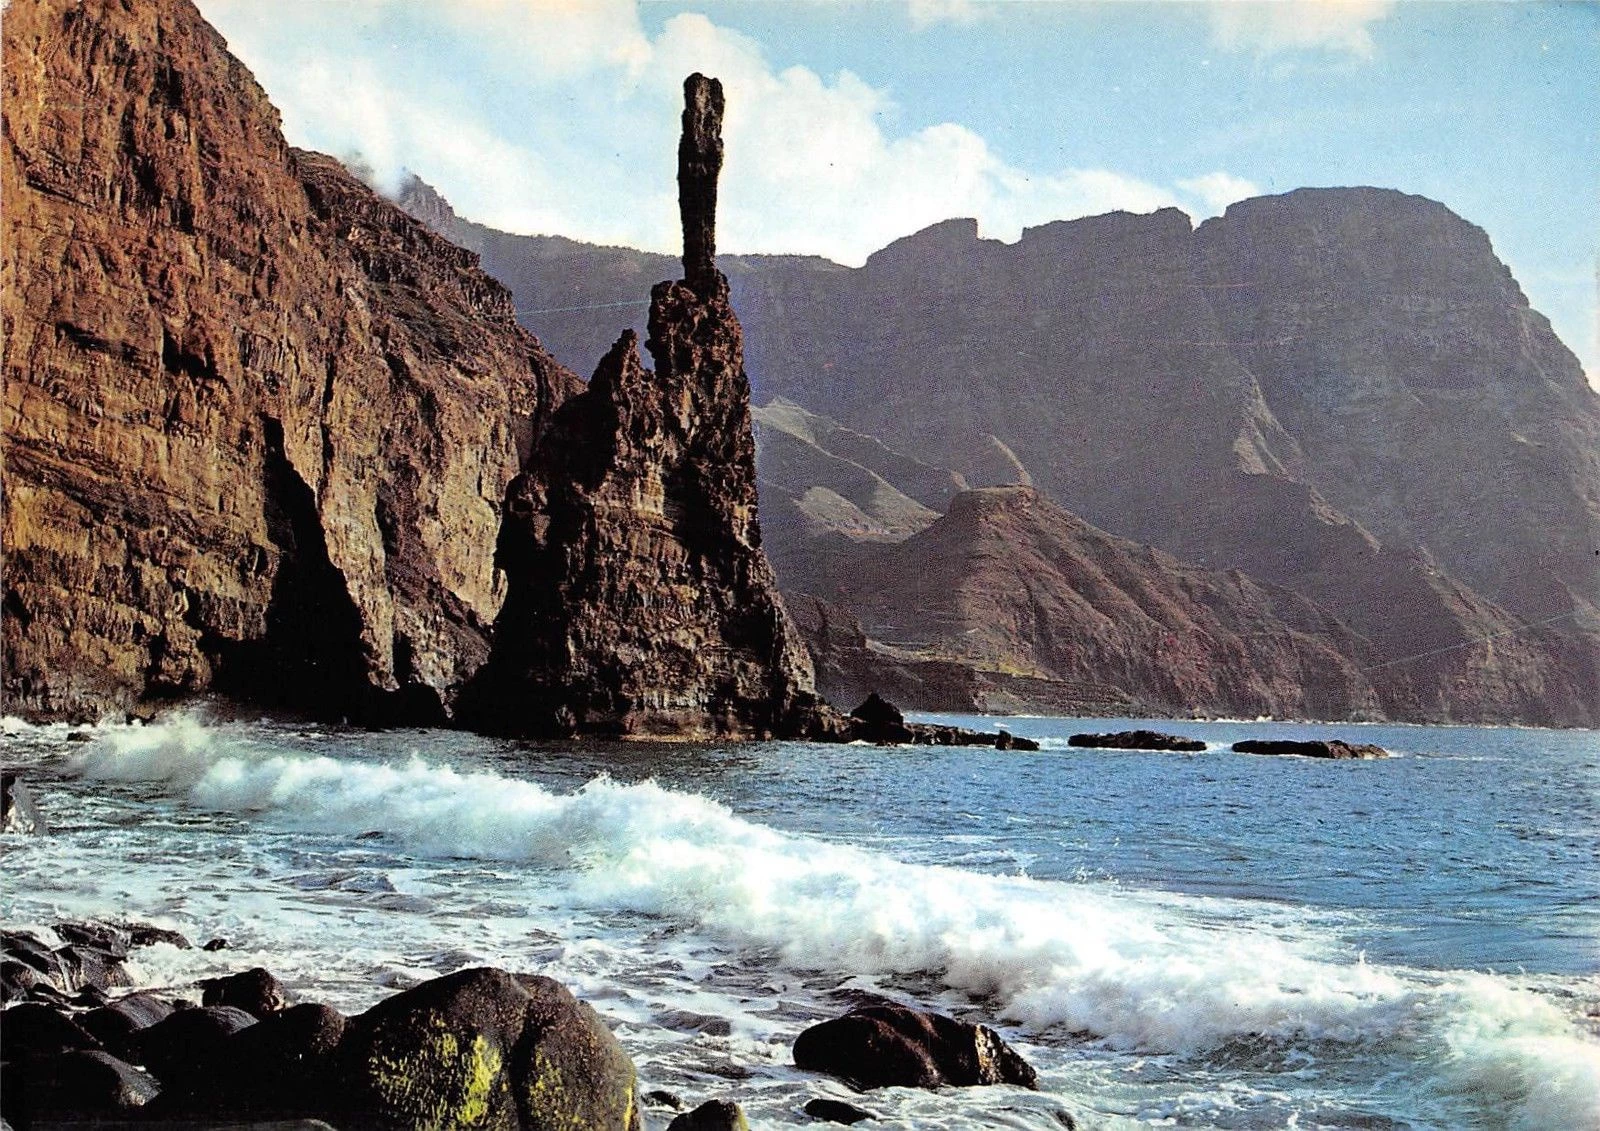 El Dedo de Dios (Tây Ban Nha): Tên của địa danh này có nghĩa "ngón tay của Chúa". Nó là một khối đá tàn dư cao khoảng 30 m, nằm ở ngoài khơi Gran Canaria. Cơn bão nhiệt đới Delta năm 2005 đã khiến đỉnh của tuyệt tác thiên nhiên này vỡ ra và rơi xuống biển. Tảng đá này từng là nguồn cảm hứng cho nhiều nghệ sỹ. Ảnh: Hippostcard.